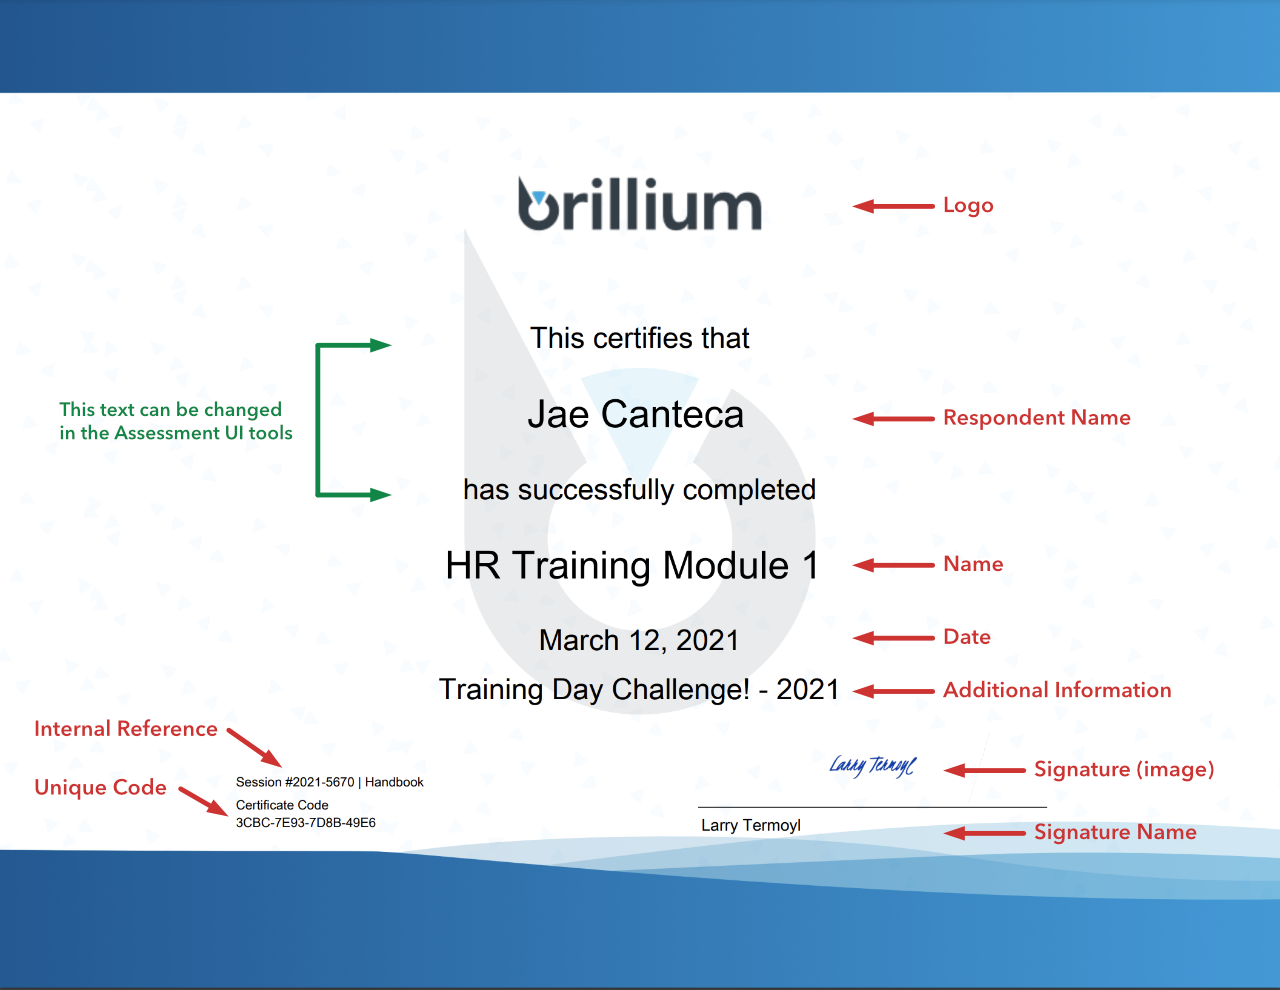 Brillium Certificate Data and Design Elements